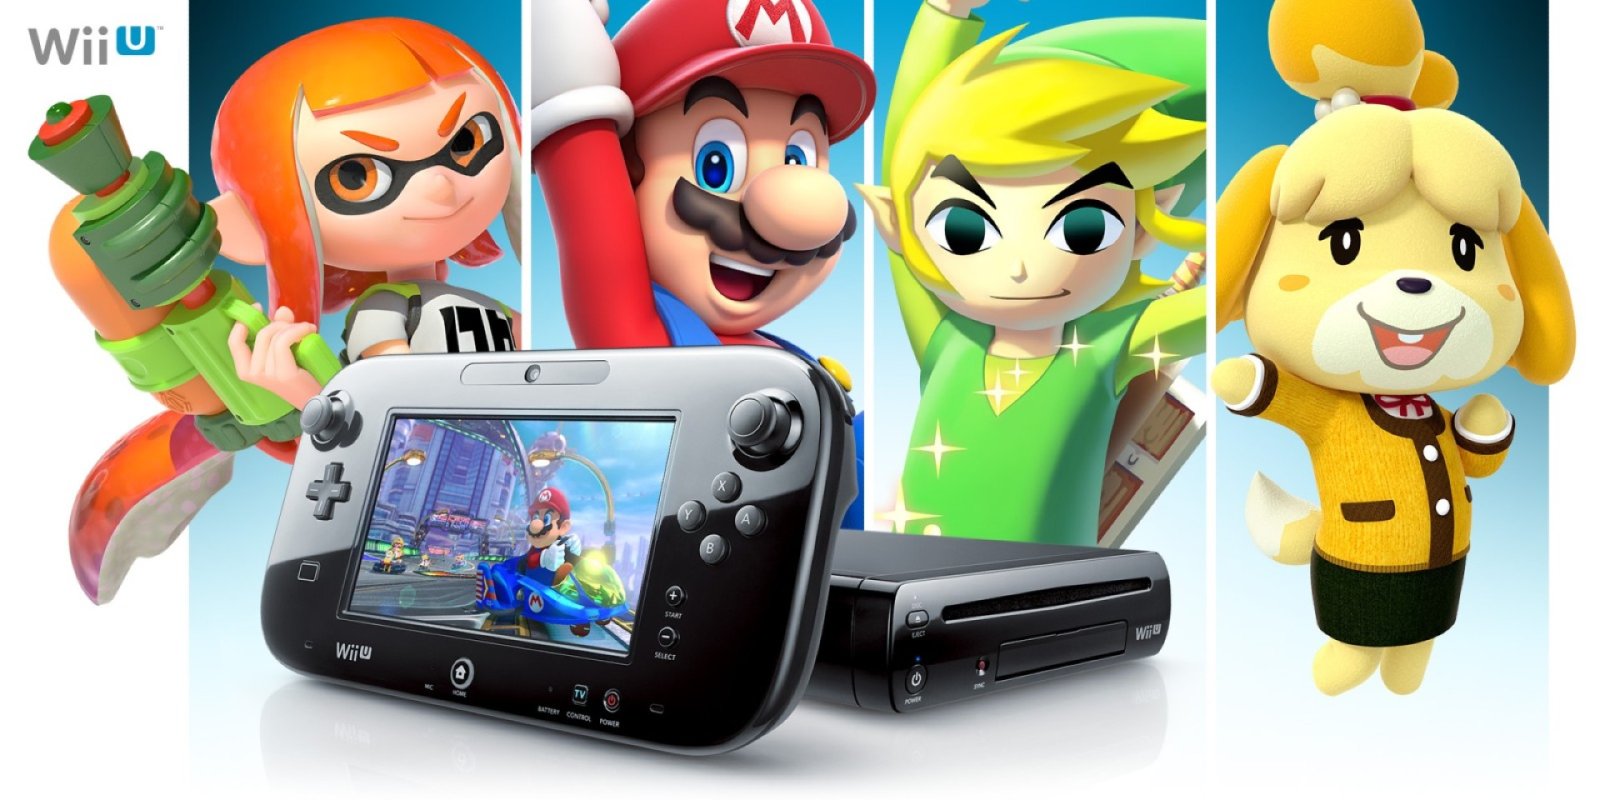 Nintendo Wii U ถูกขายในสหรัฐฯ เป็นเครื่องแรกที่ขายได้ตั้งแต่ปี ค.ศ. 2022